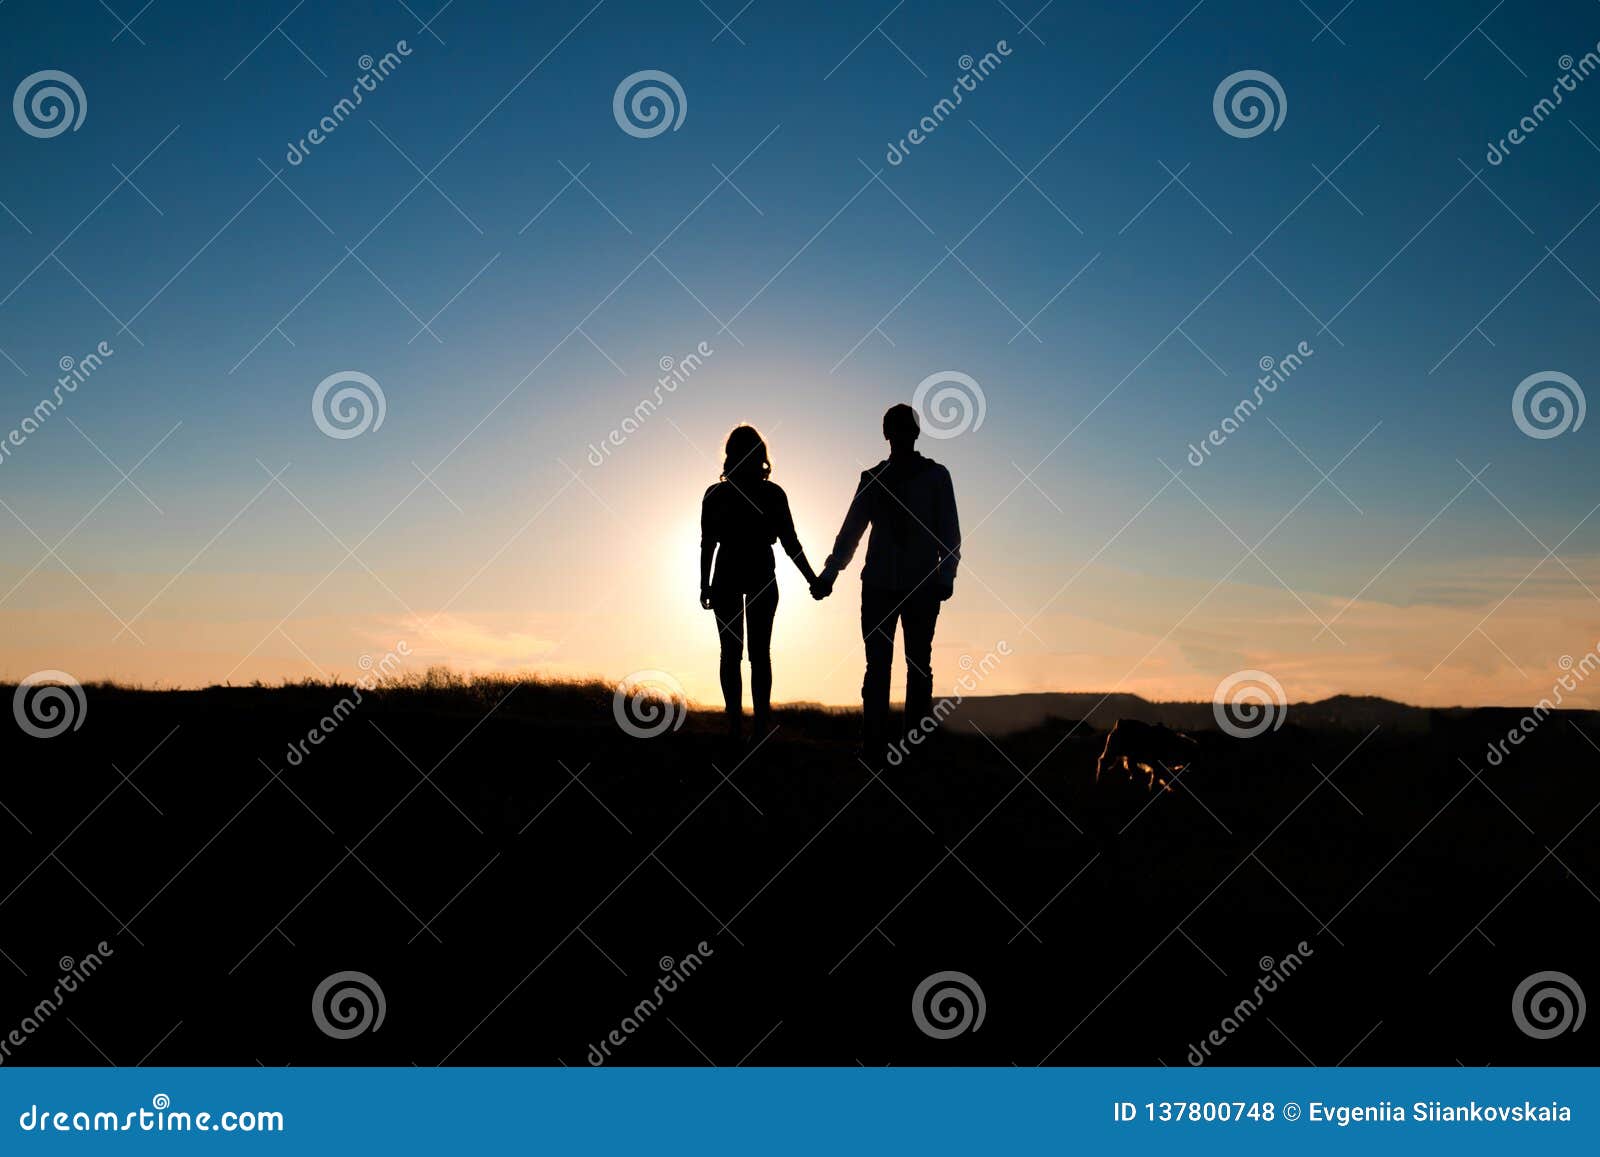 Romantic Couple Hug at Sunset on Background. Stock Photo - Image ...